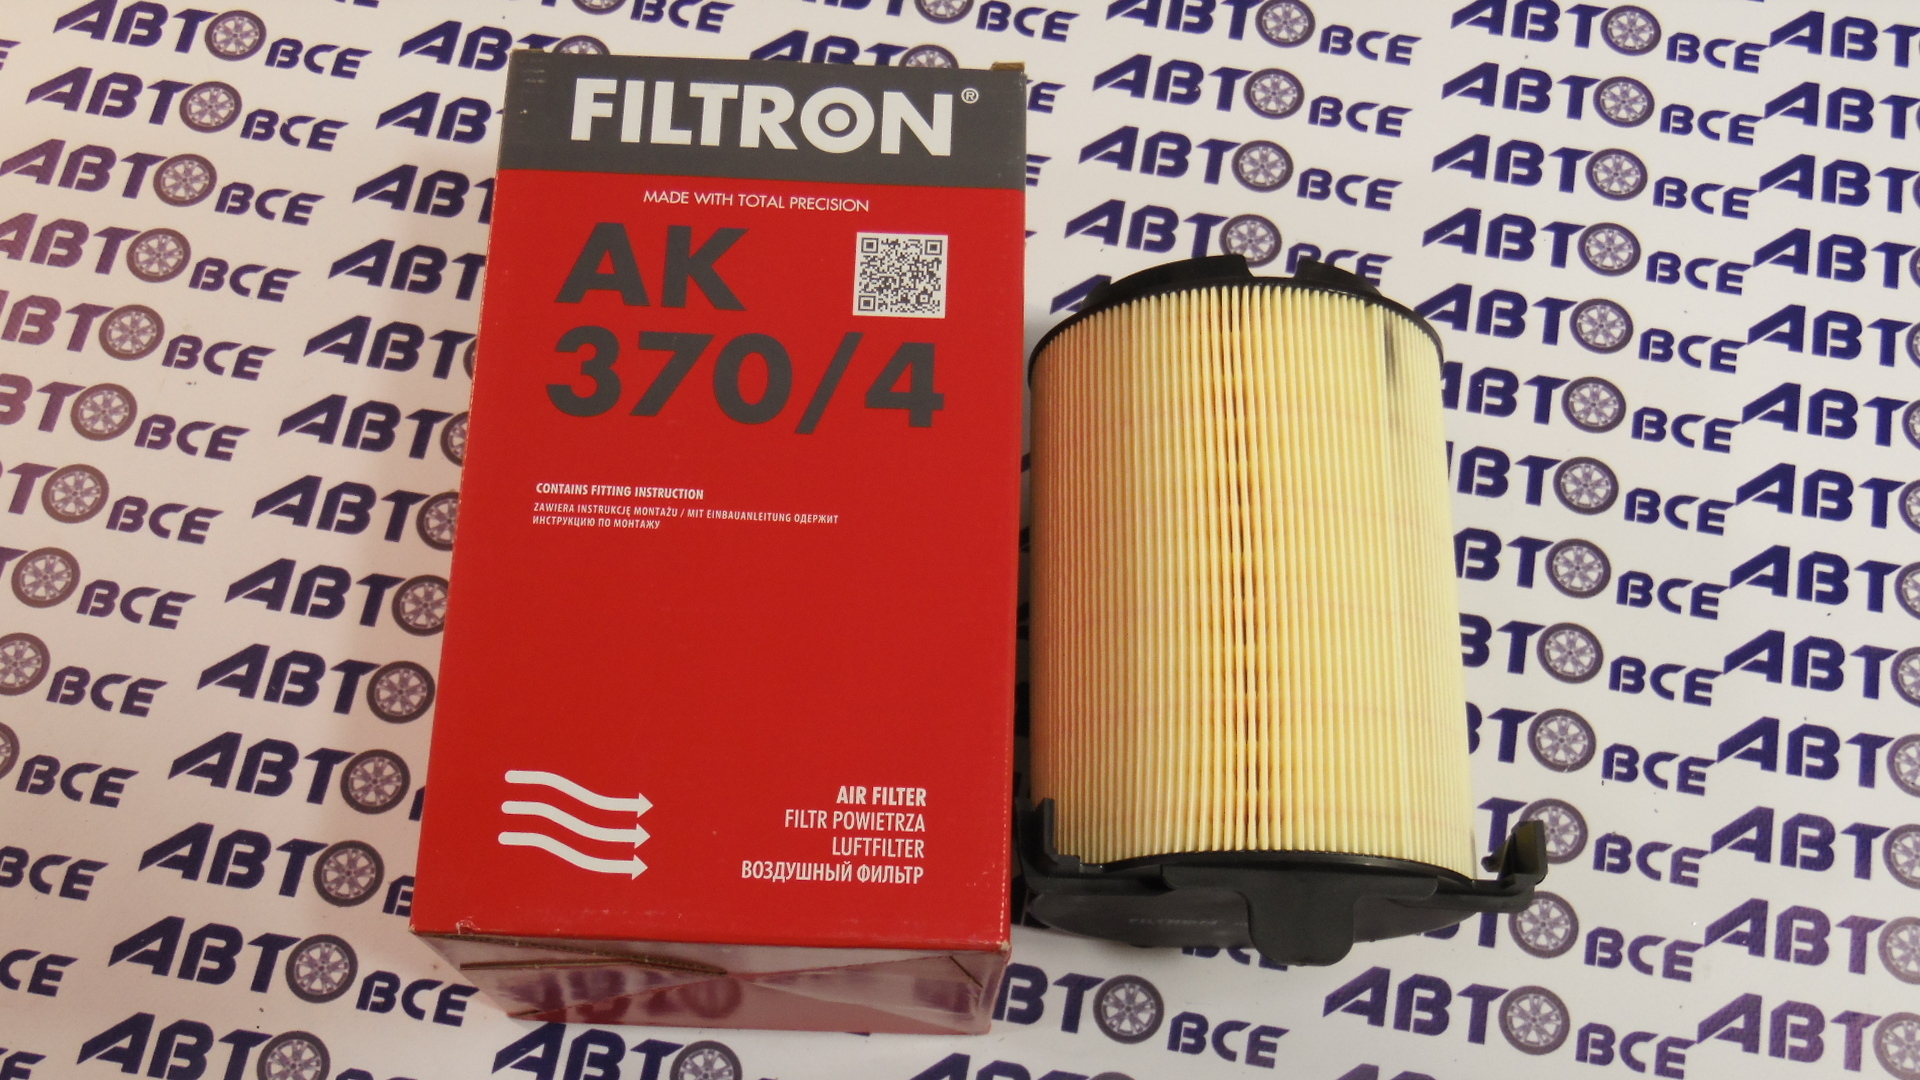 Фильтр воздушный AK3704 FILTRON